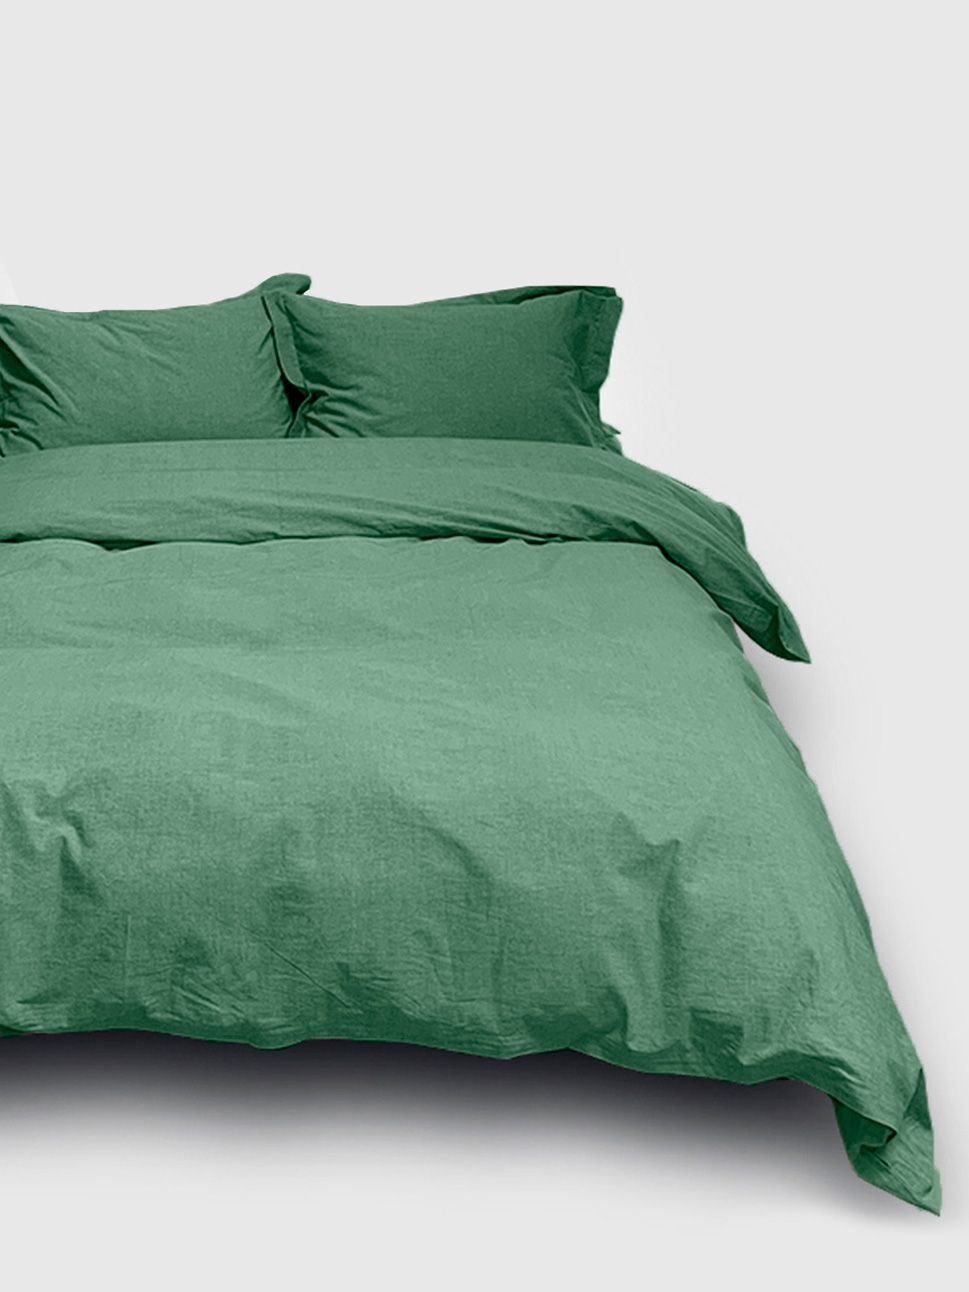 Комплект постельного белья Евро комплект Loft Green melange